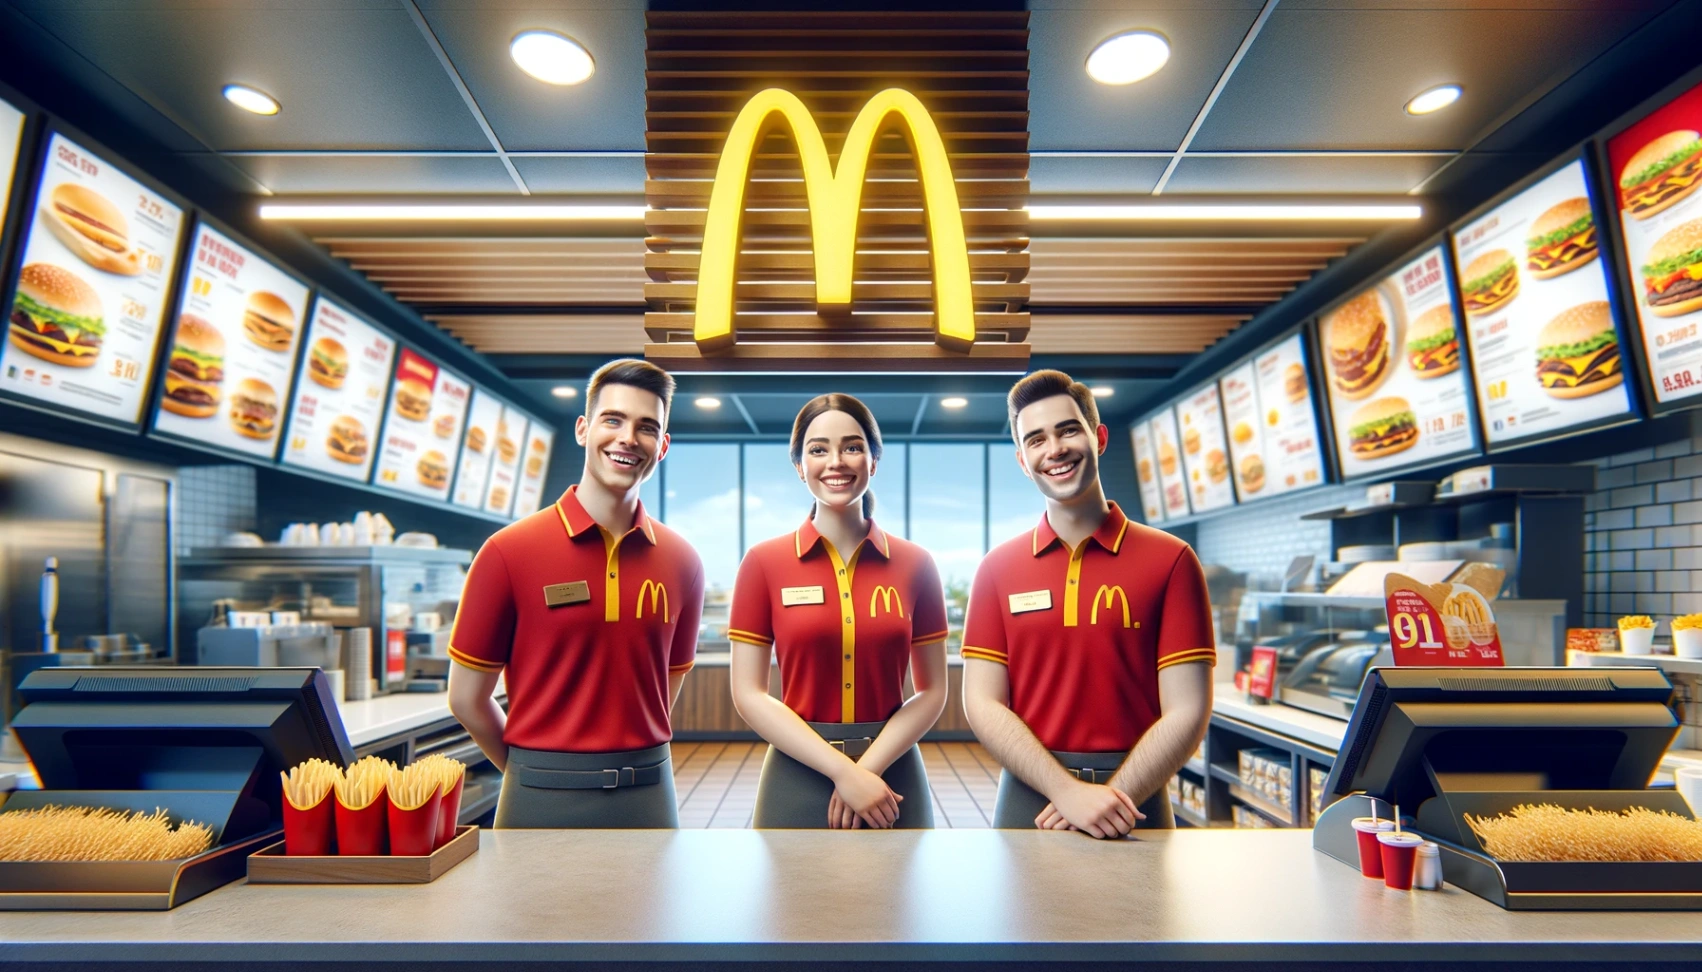 Cơ hội việc làm tại McDonald's: Học cách nhanh chóng nộp đơn trực tuyến [WW]